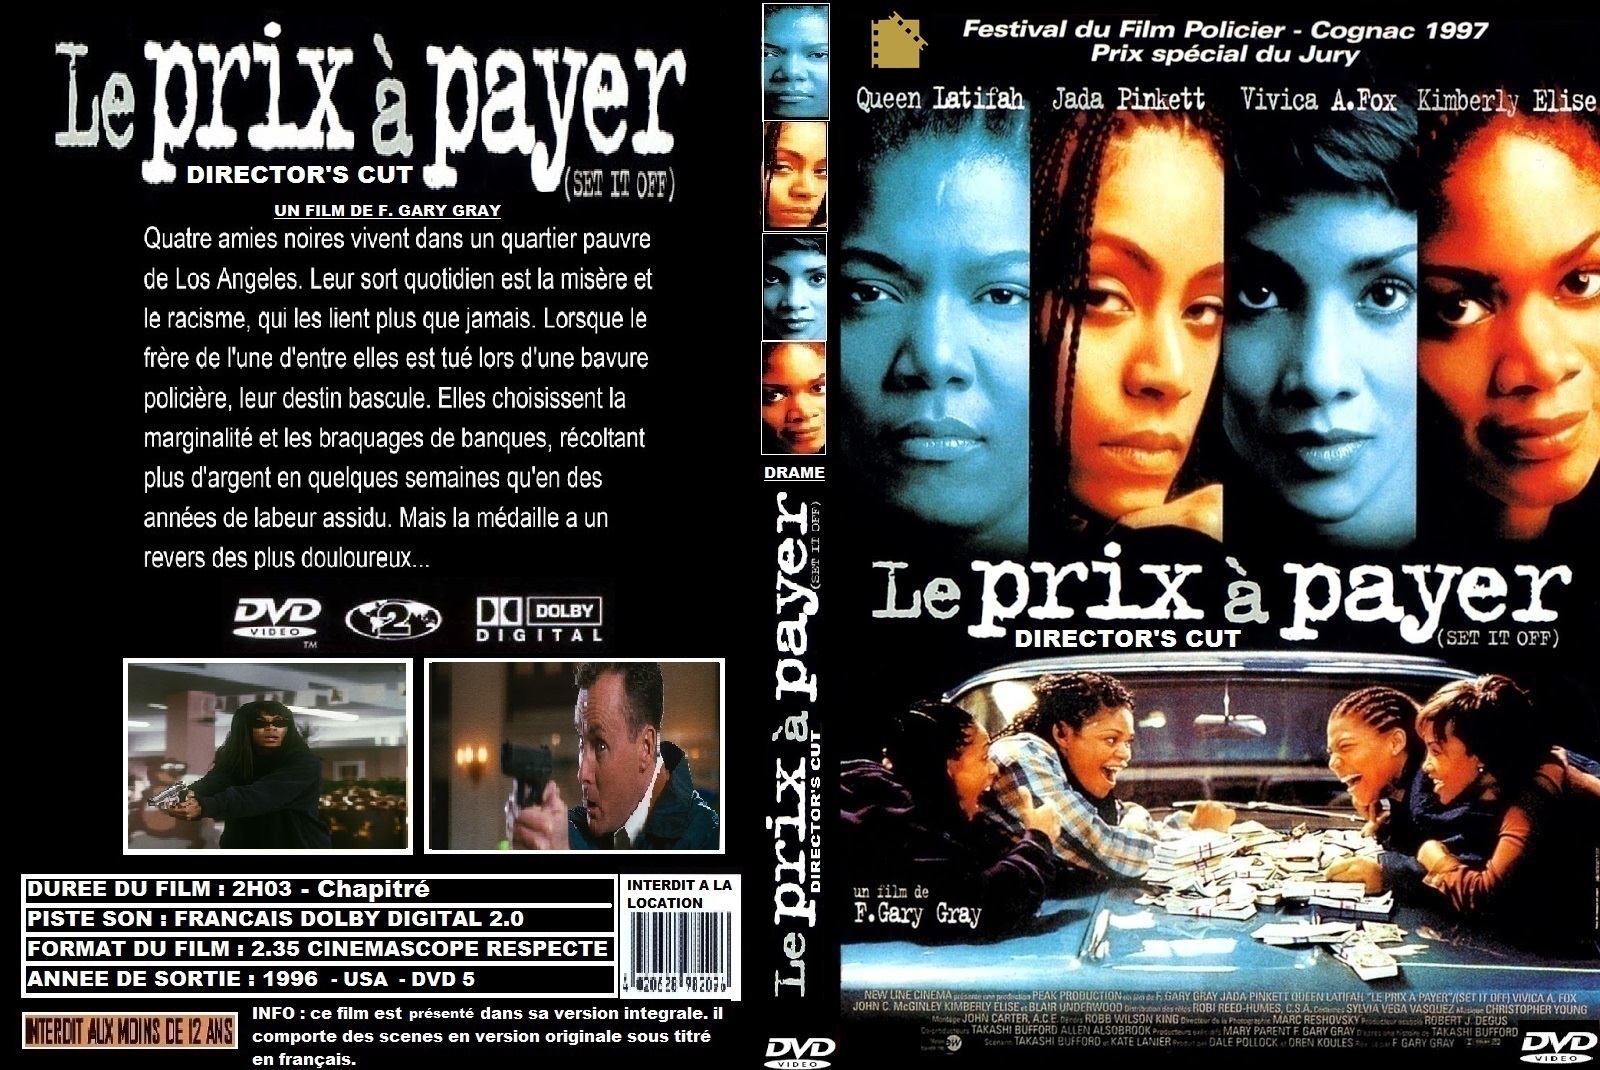 Jaquette DVD Le prix  payer (1997) custom